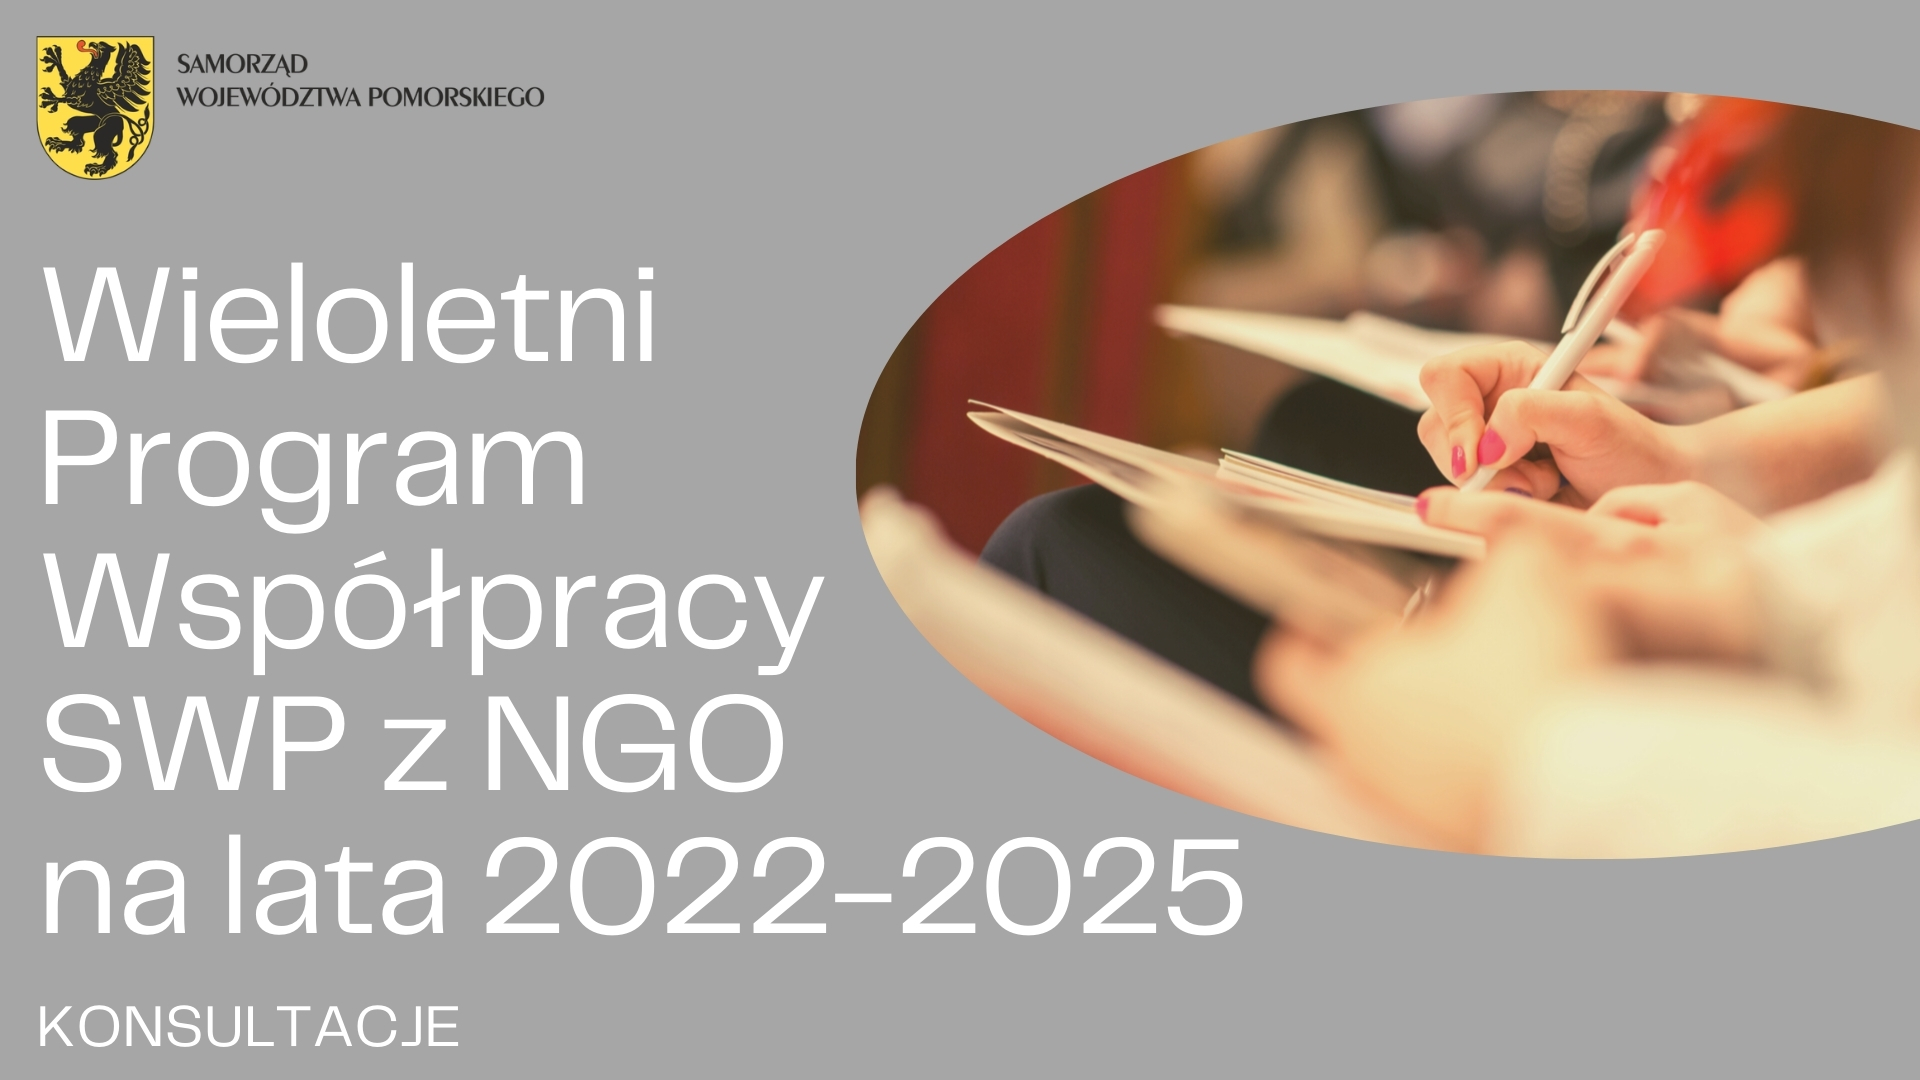 Konsultacje Wieloletniego Programu Współpracy SWP z NGO na lata 2022-2025 [INFORMACJA]